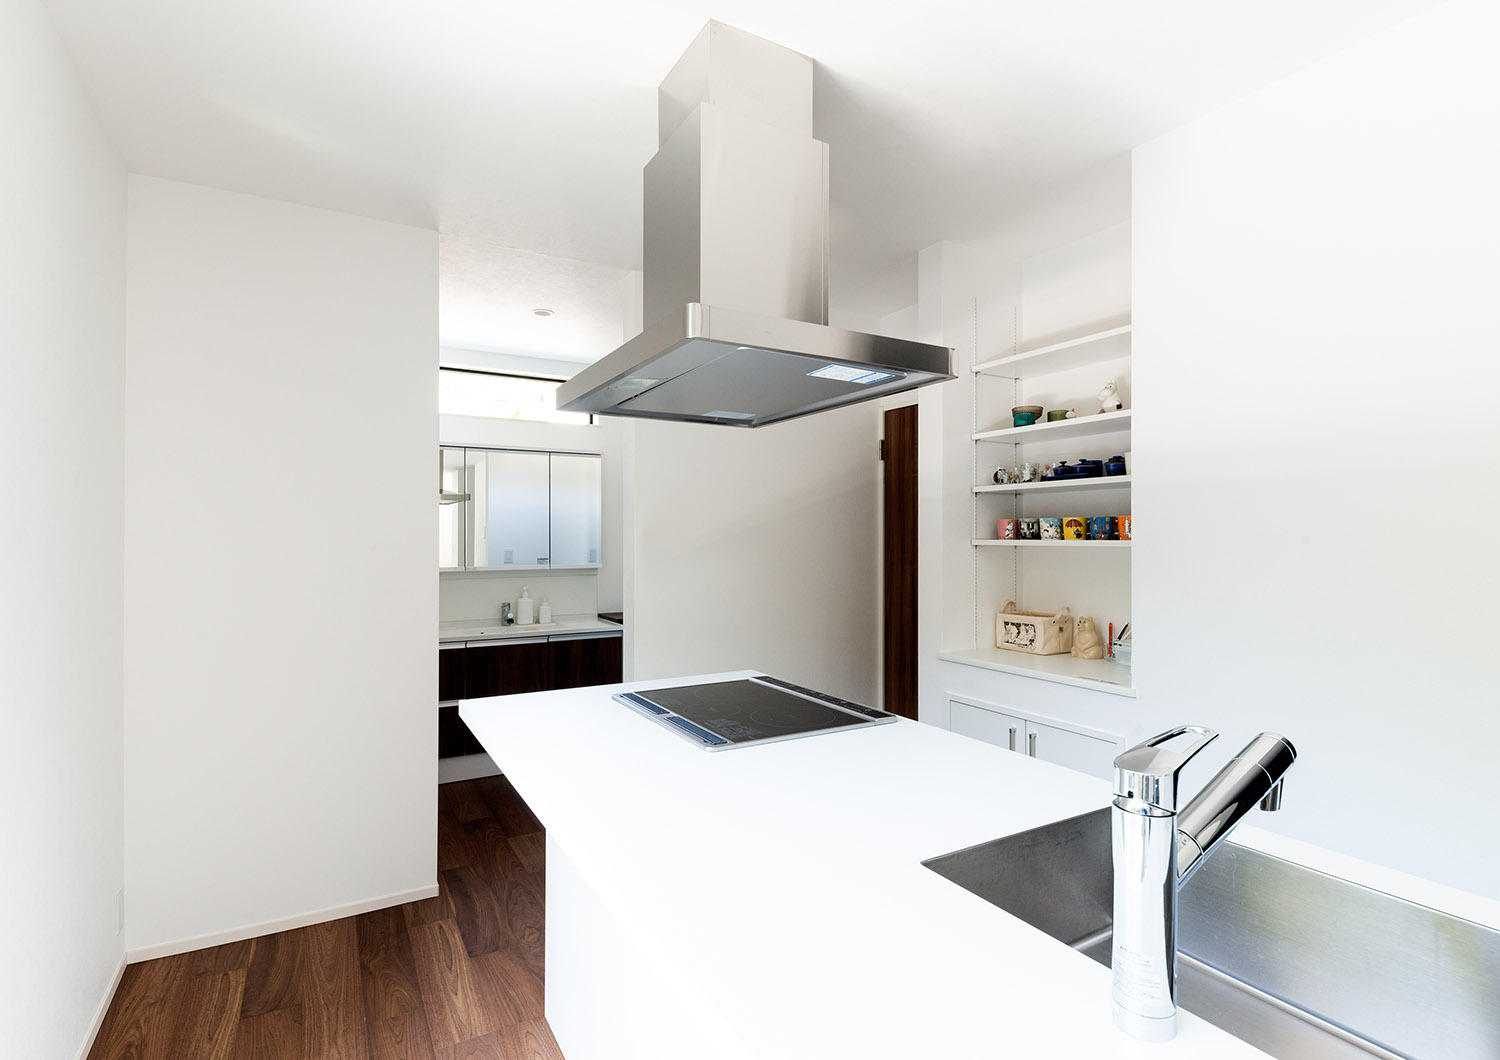 背面のカップボードまで白で統一された清潔感のあるIHキッチン・デザイン住宅